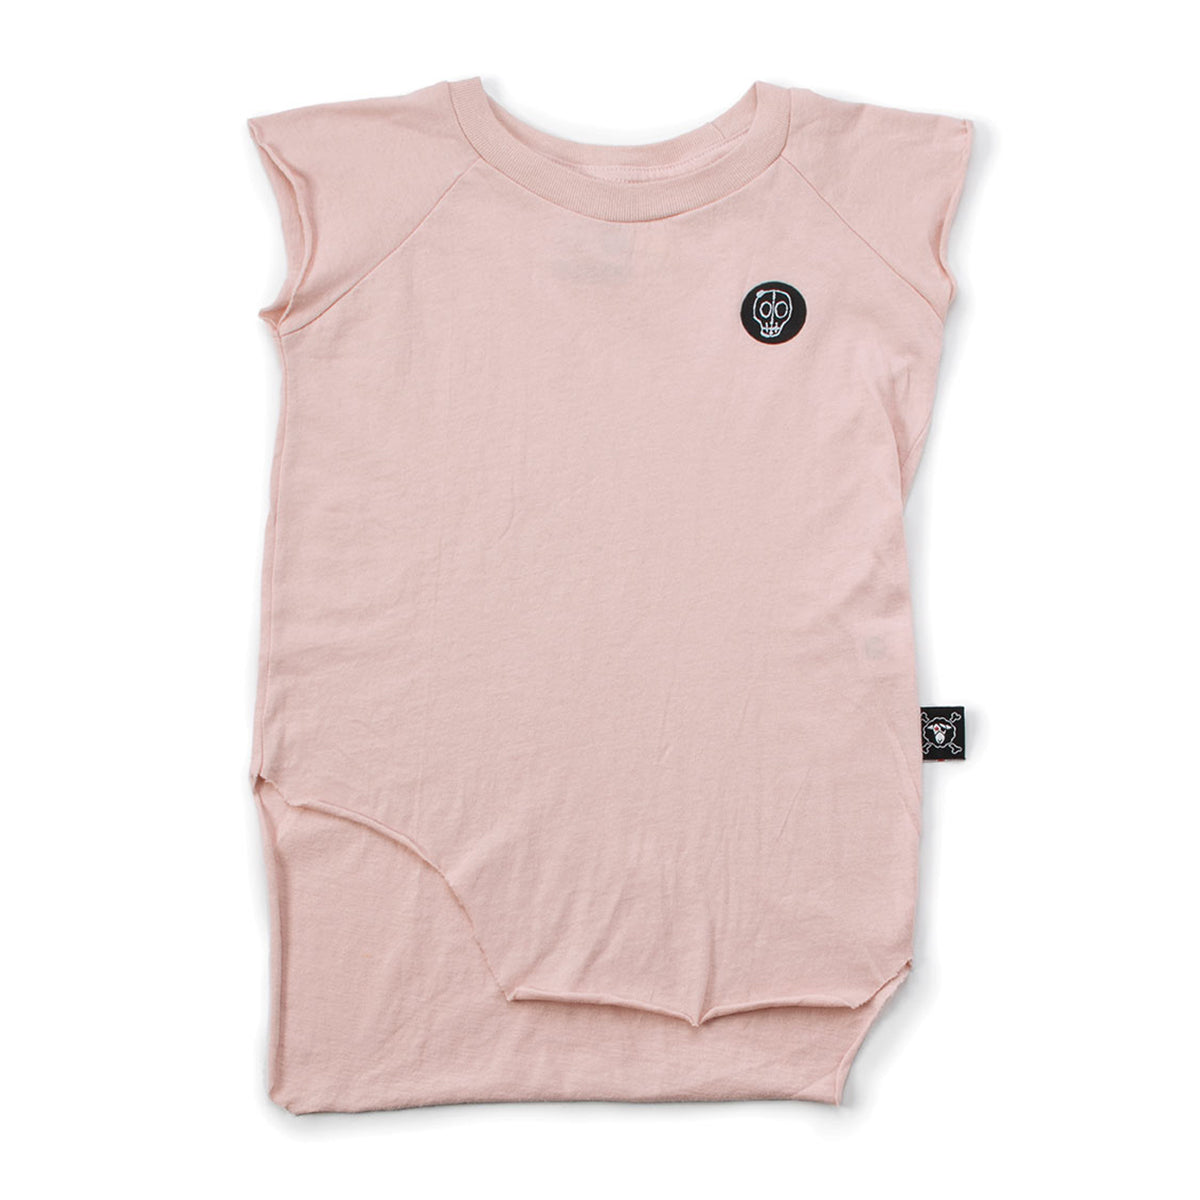 Girls Powder Pink Cotton Trimmed Sleeveless T-shirt